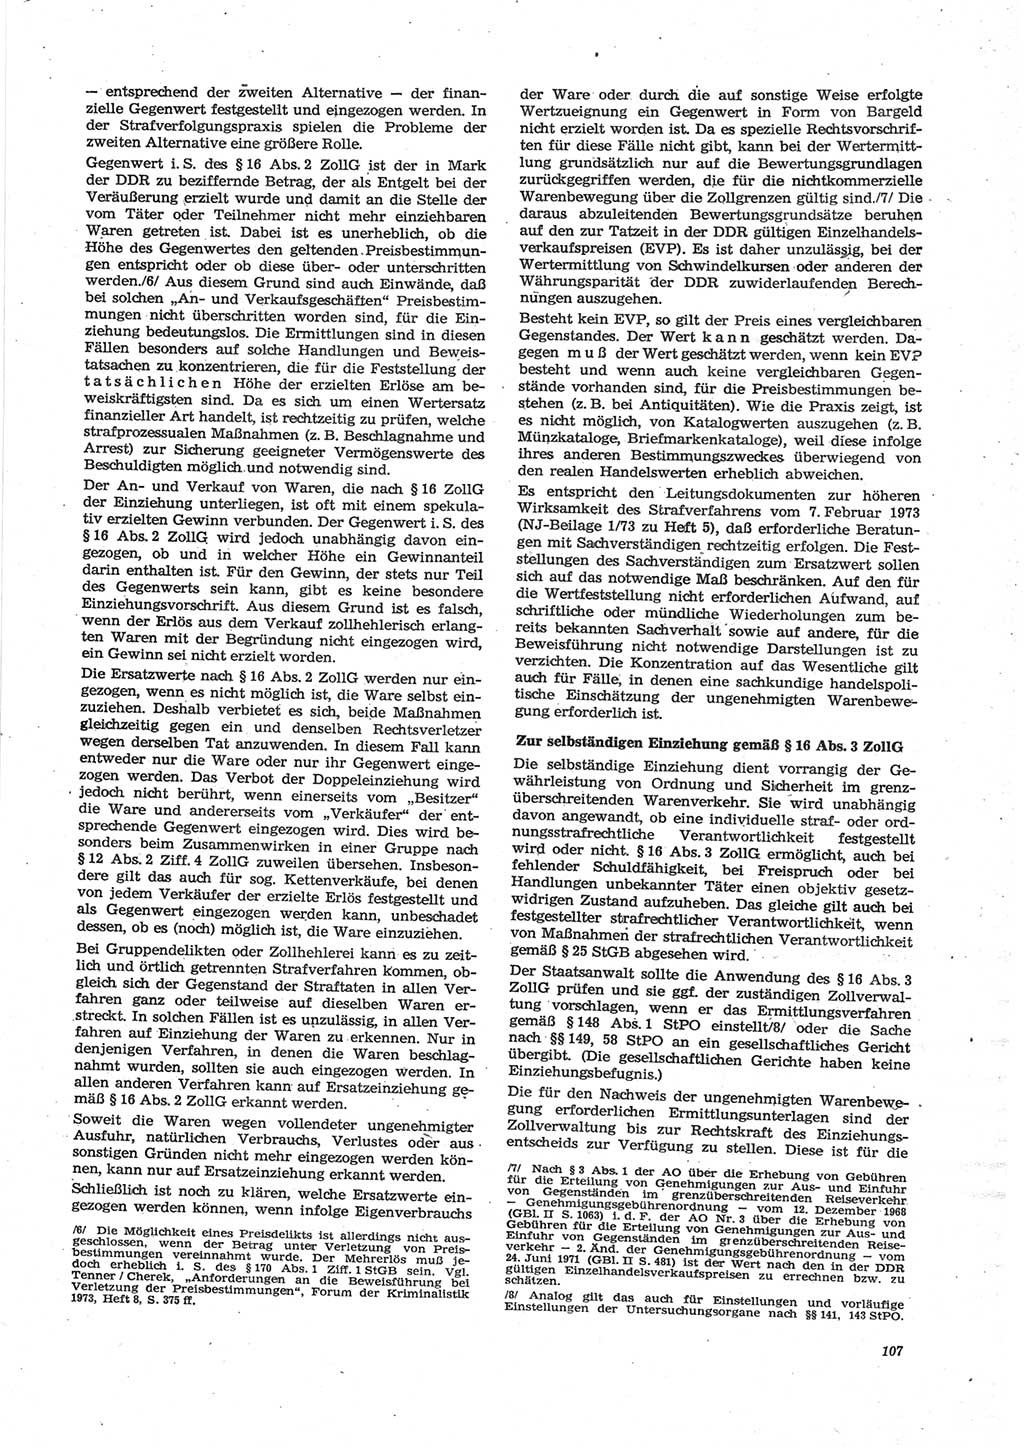 Neue Justiz (NJ), Zeitschrift für Recht und Rechtswissenschaft [Deutsche Demokratische Republik (DDR)], 28. Jahrgang 1974, Seite 107 (NJ DDR 1974, S. 107)